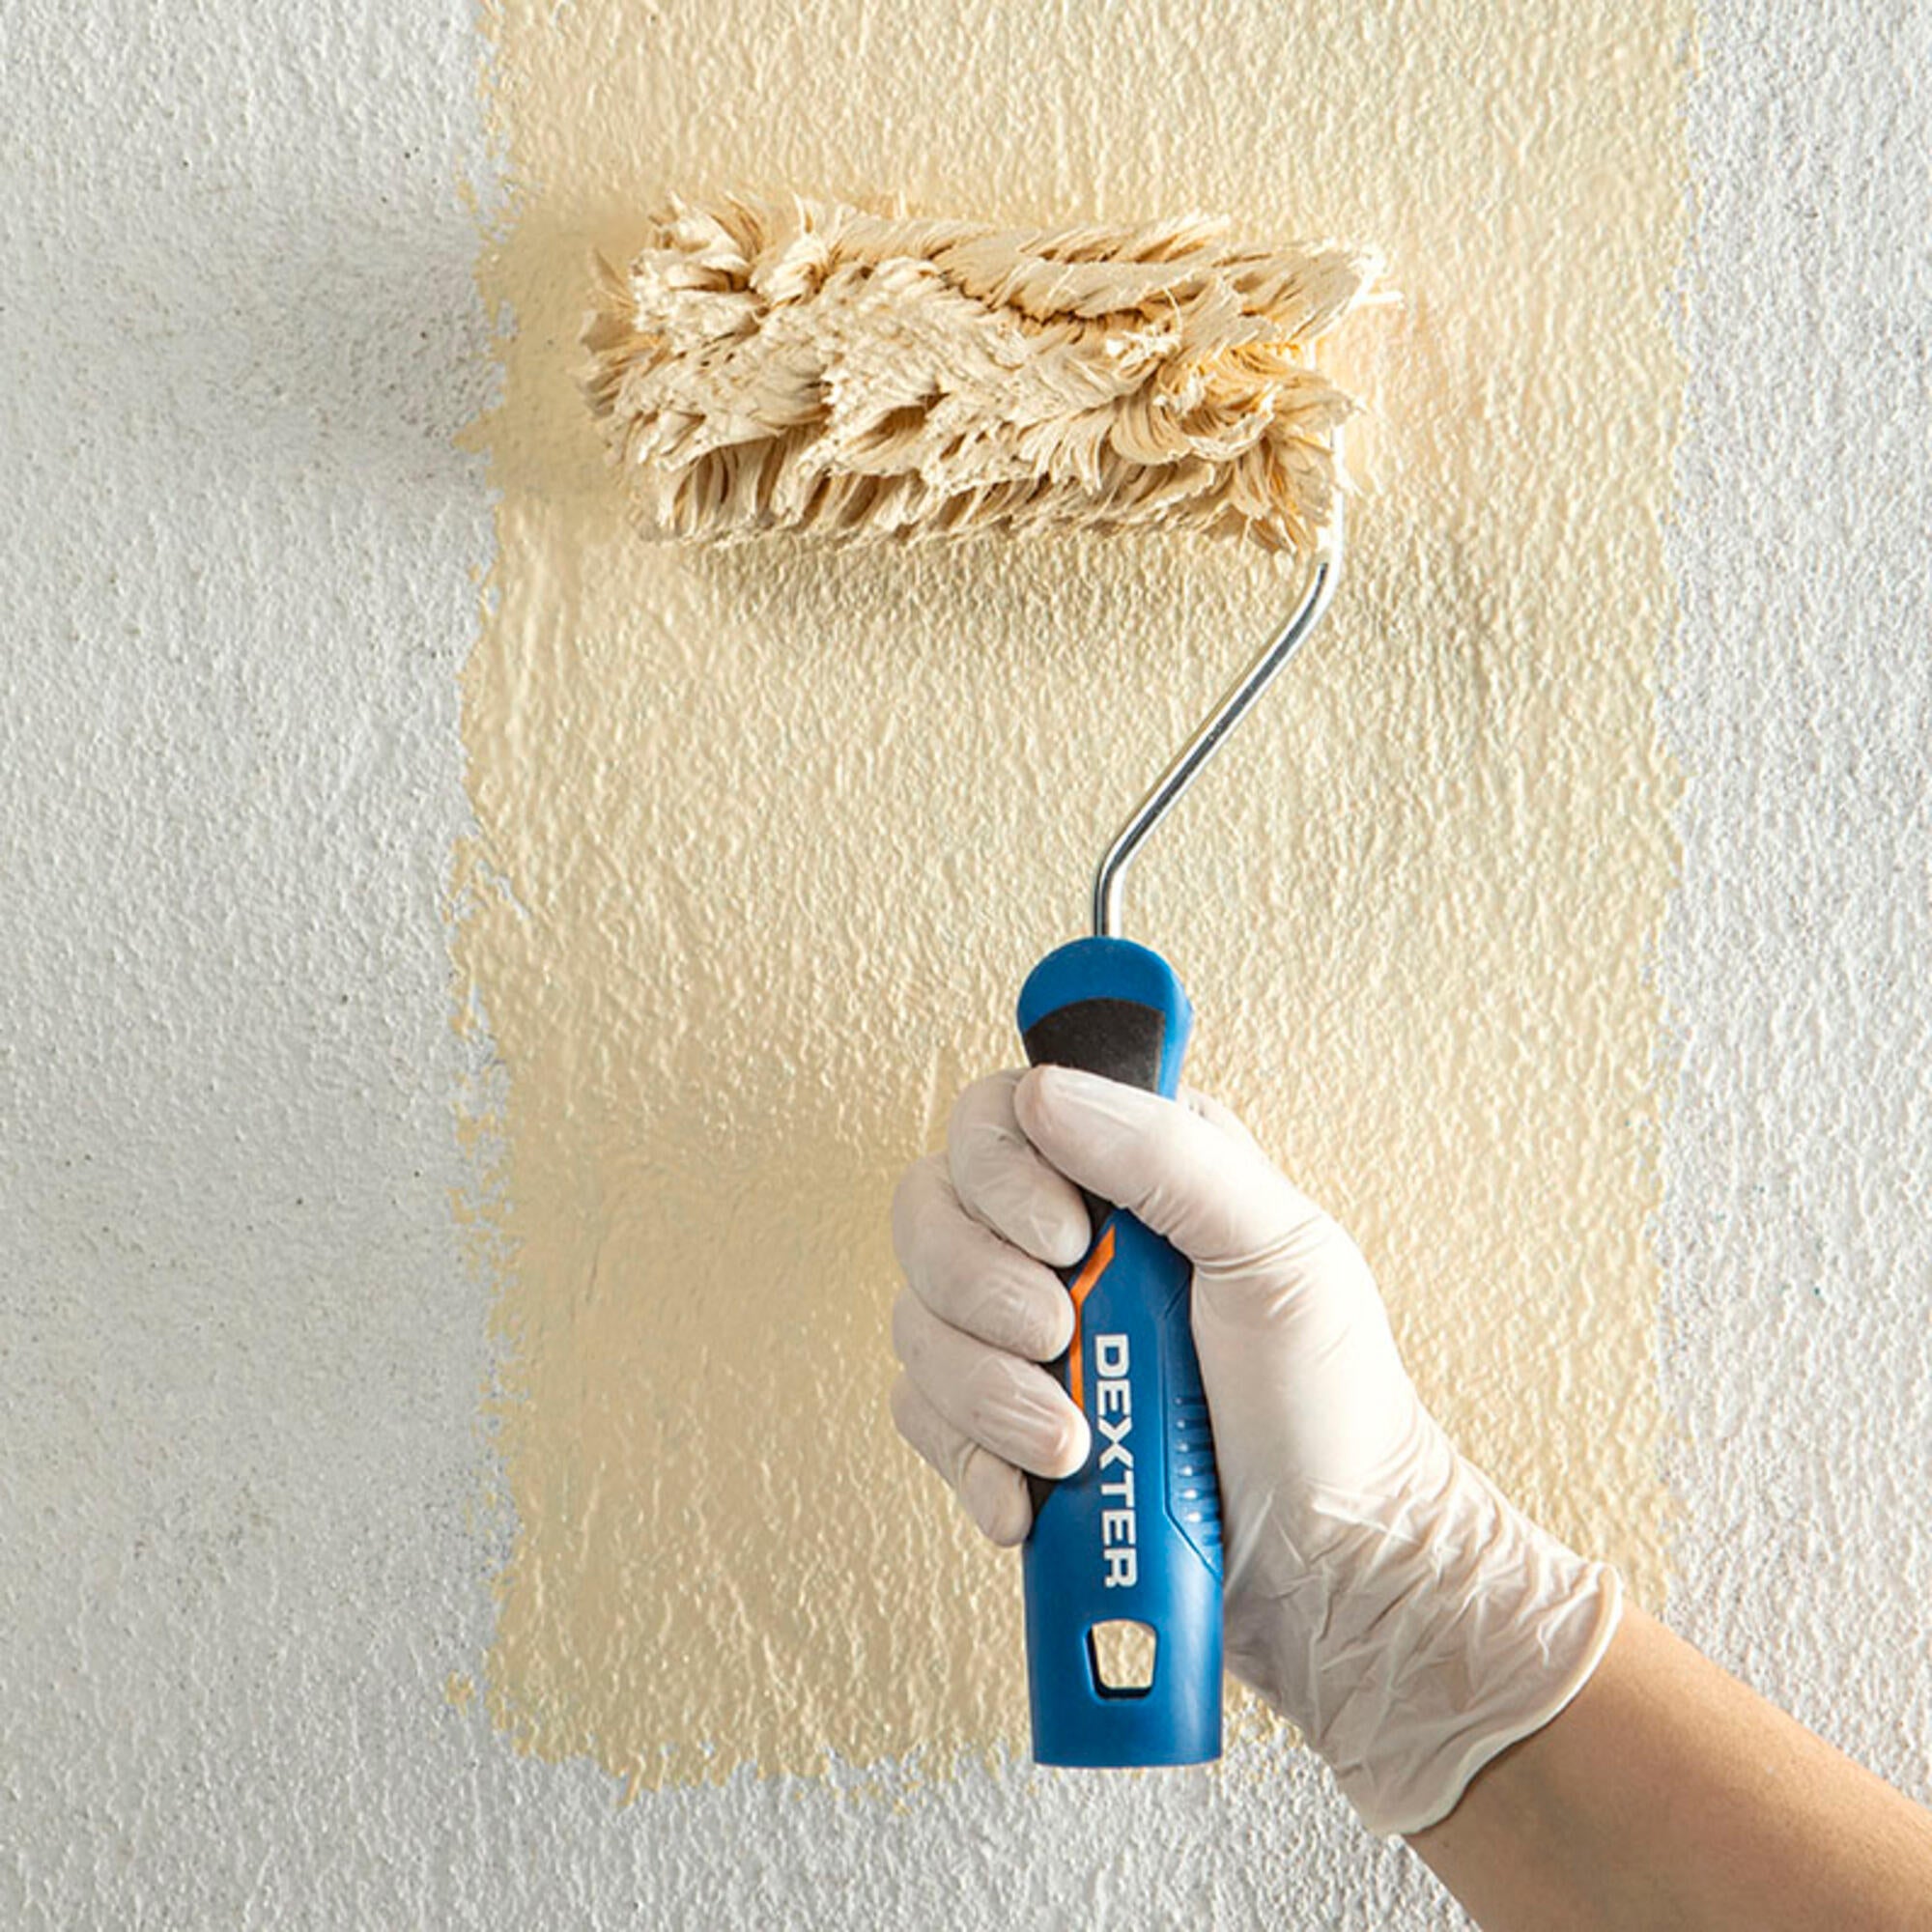 Qué tipo de rodillo es mejor para pintar paredes?